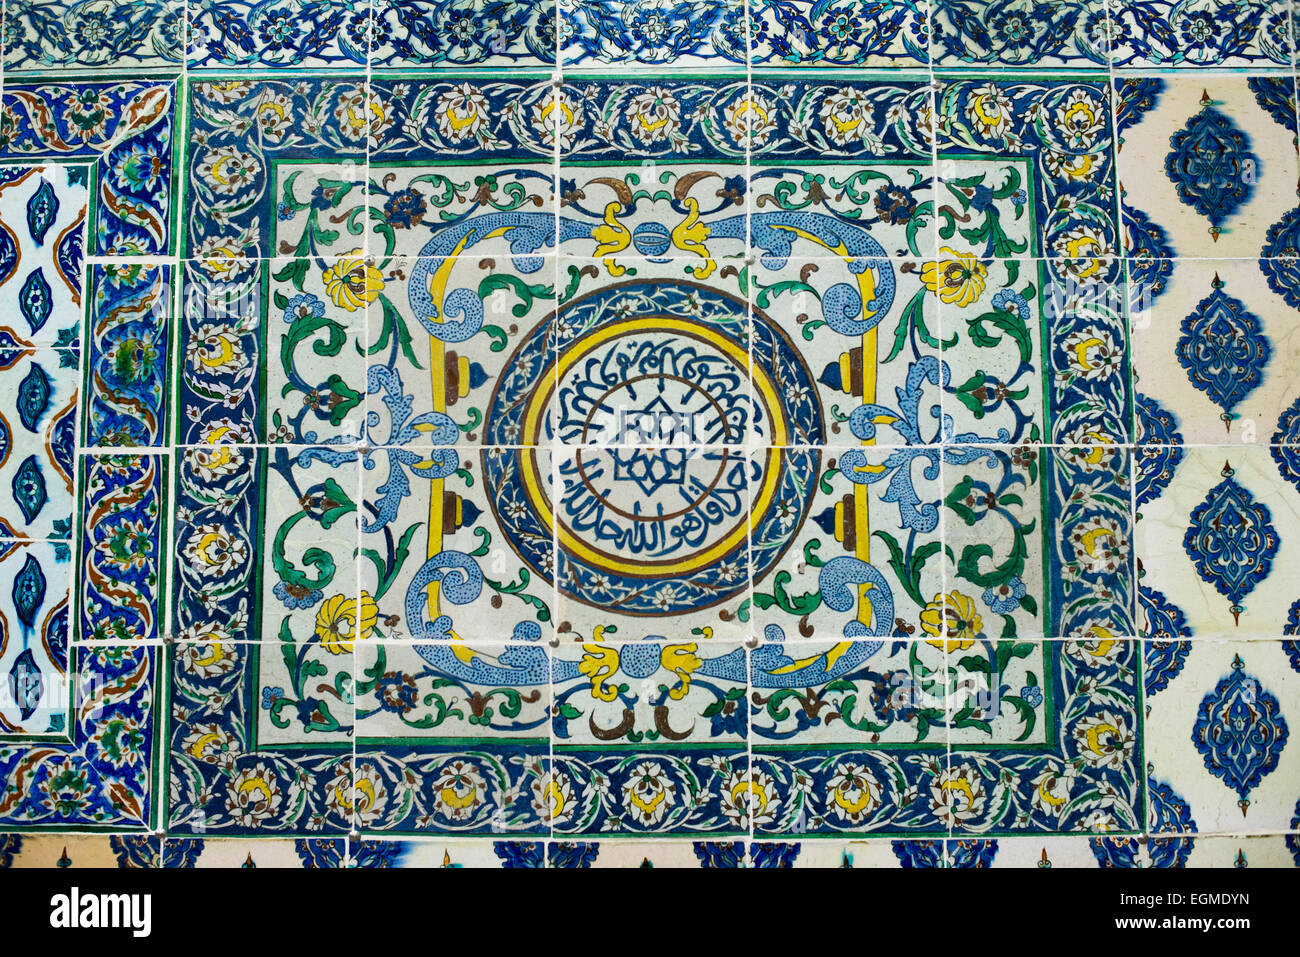 ISTANBUL, Turchia (Türkiye) — piastrelle ornate che decorano le pareti della Moschea di Harem al Palazzo Topkapi. La Moschea di Harem (Harem Mescidi) di Palazzo Topkapi fu costruita nel 17th ° secolo come sala di preghiera per la madre del sultano, le figlie, e la prima consorte, così come le donne anziane dell'harem. L'Harem Imperiale era il santum interno del Palazzo Topkapi dove visse il Sultano e la sua famiglia. Situato su una penisola che domina lo stretto del Bosforo e il Corno d'Oro, il Palazzo Topkapi fu la residenza primaria dei sultani ottomani per circa 400 anni (1465–1856) del loro regno di 624 anni. Foto Stock